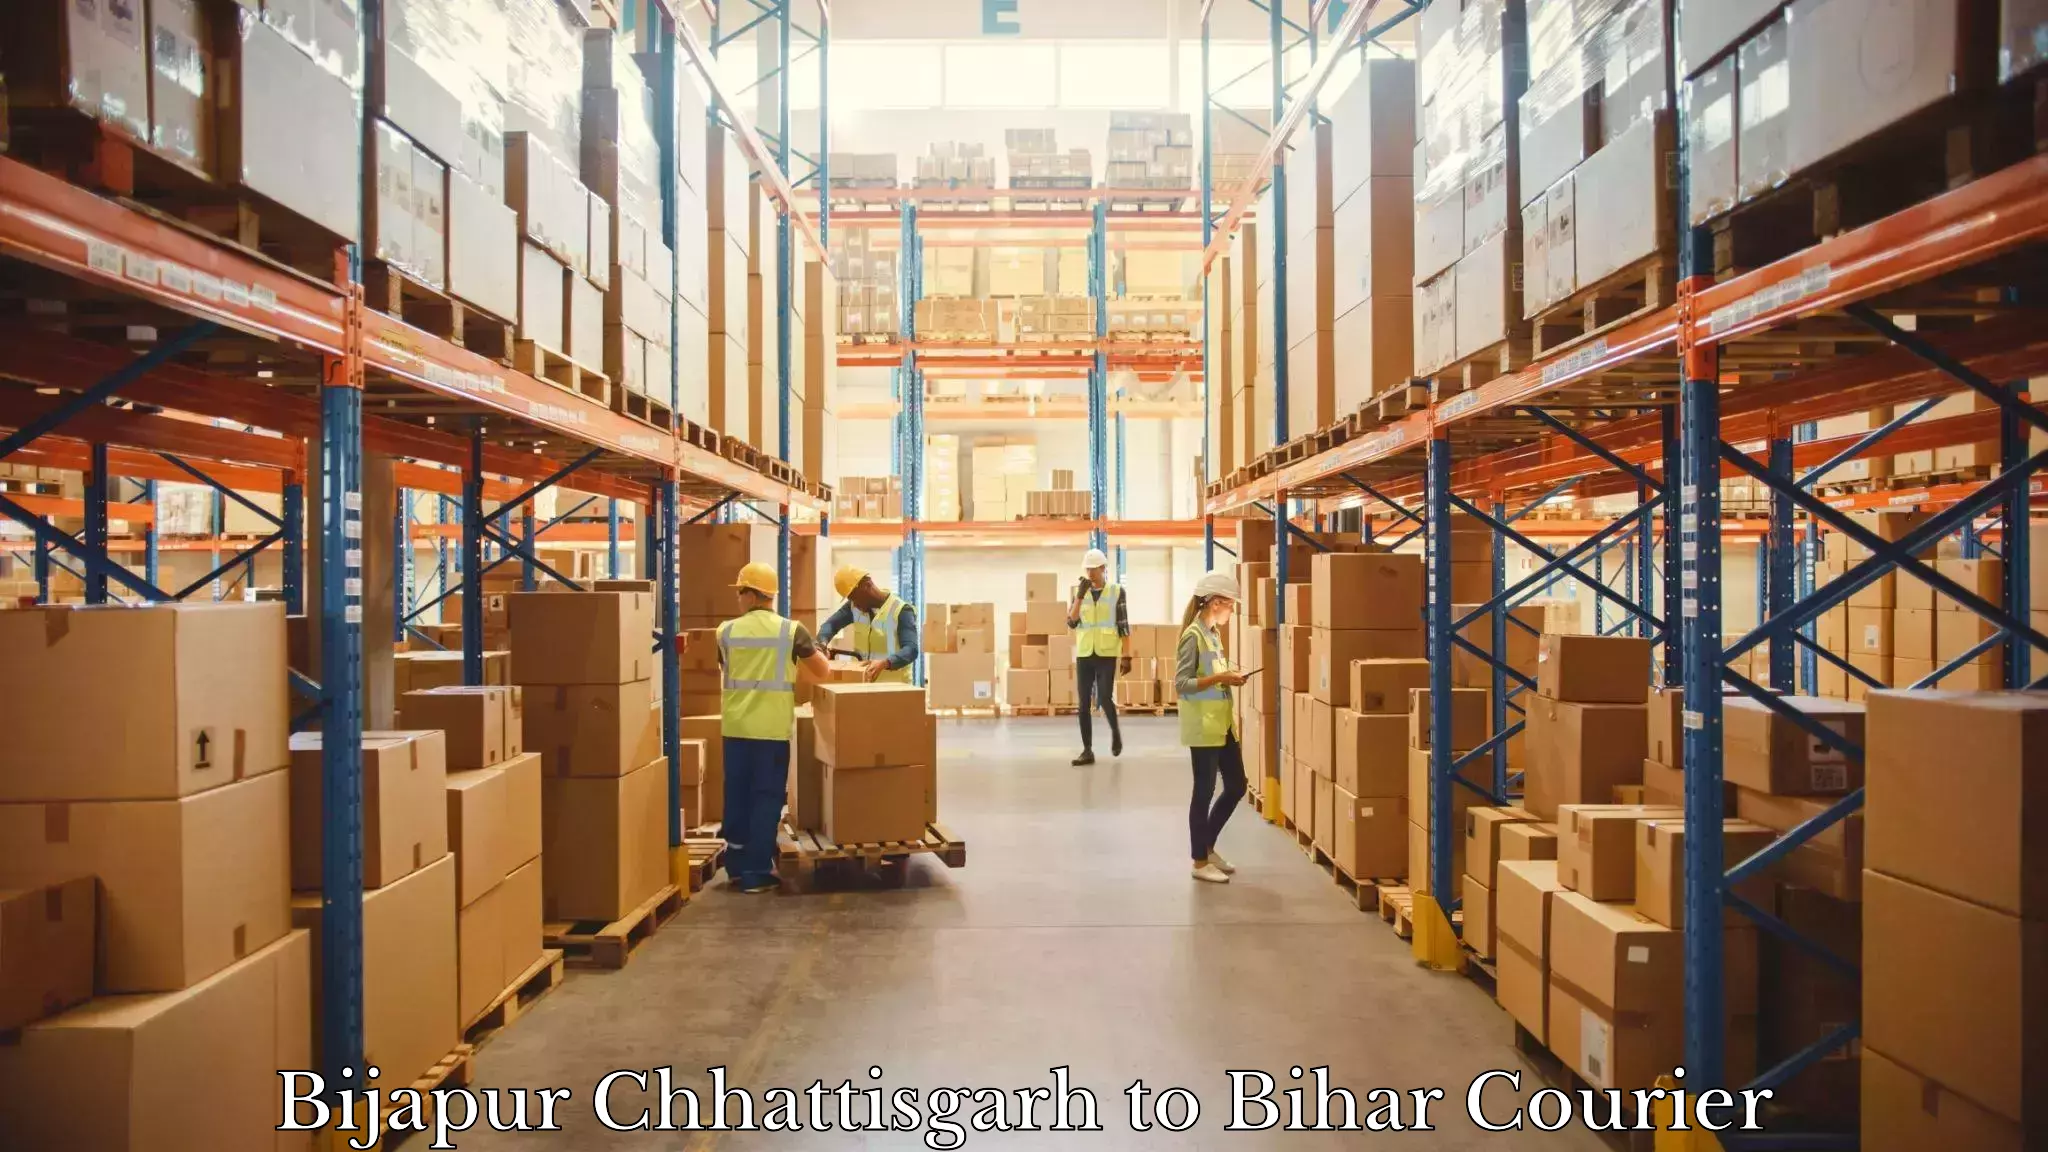 User-friendly delivery service Bijapur Chhattisgarh to Benipatti